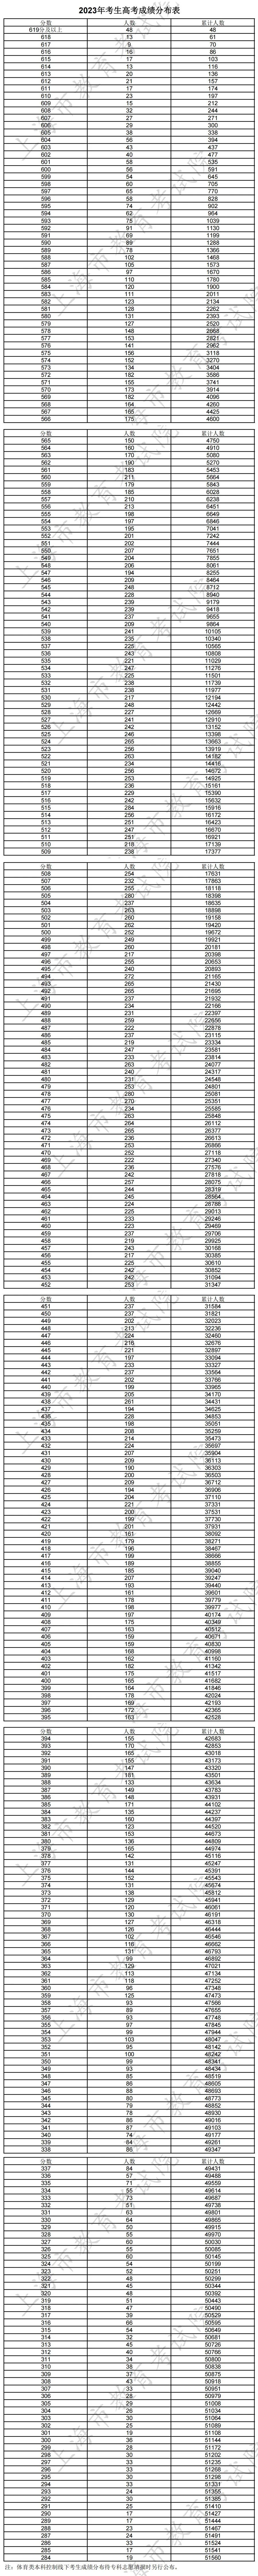 上海市2023年高考一分一段表成绩排名